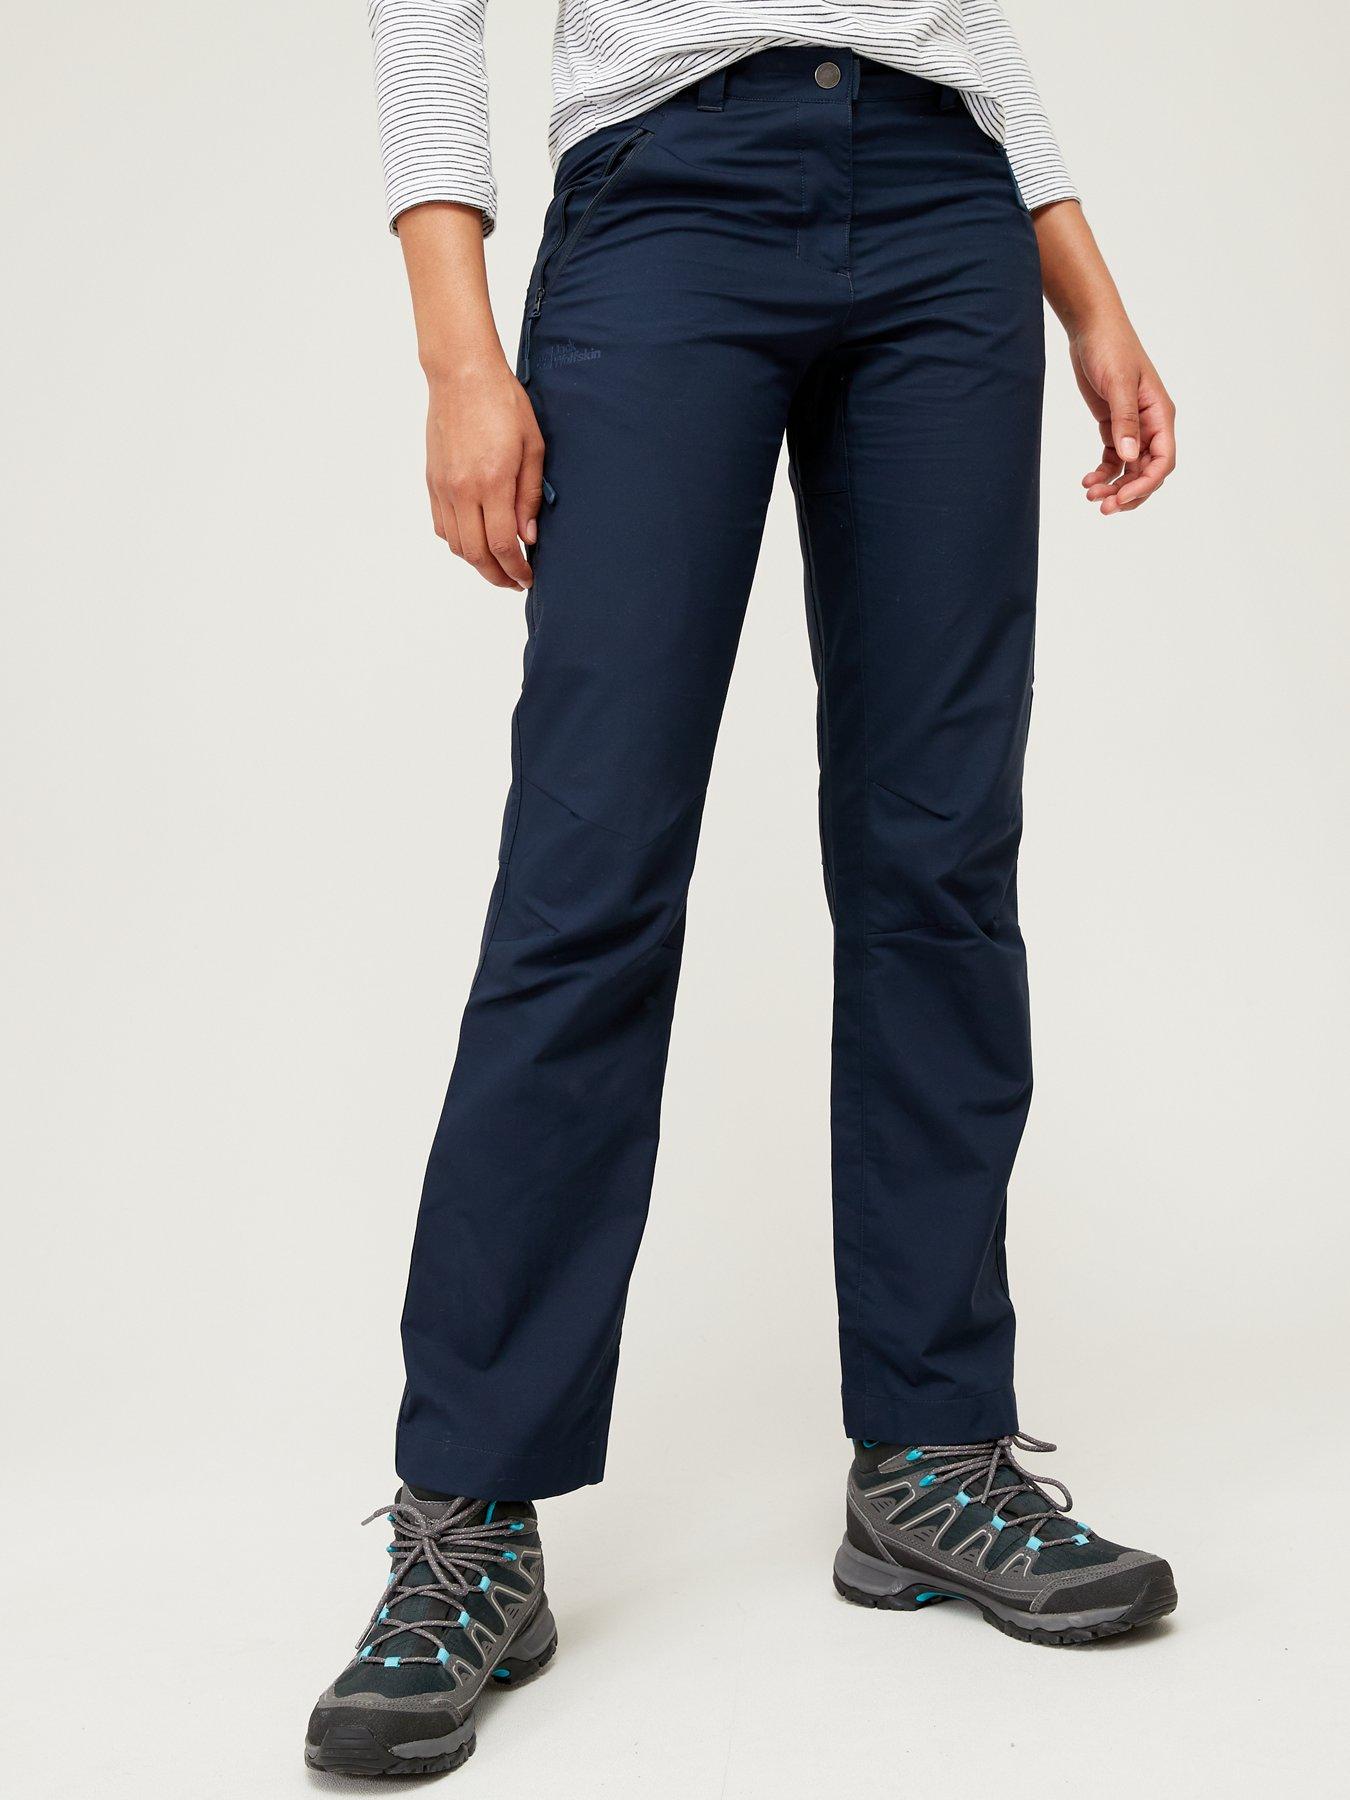 TOG24 Women's Milton Skinny Fit Waterproof Walking Trousers